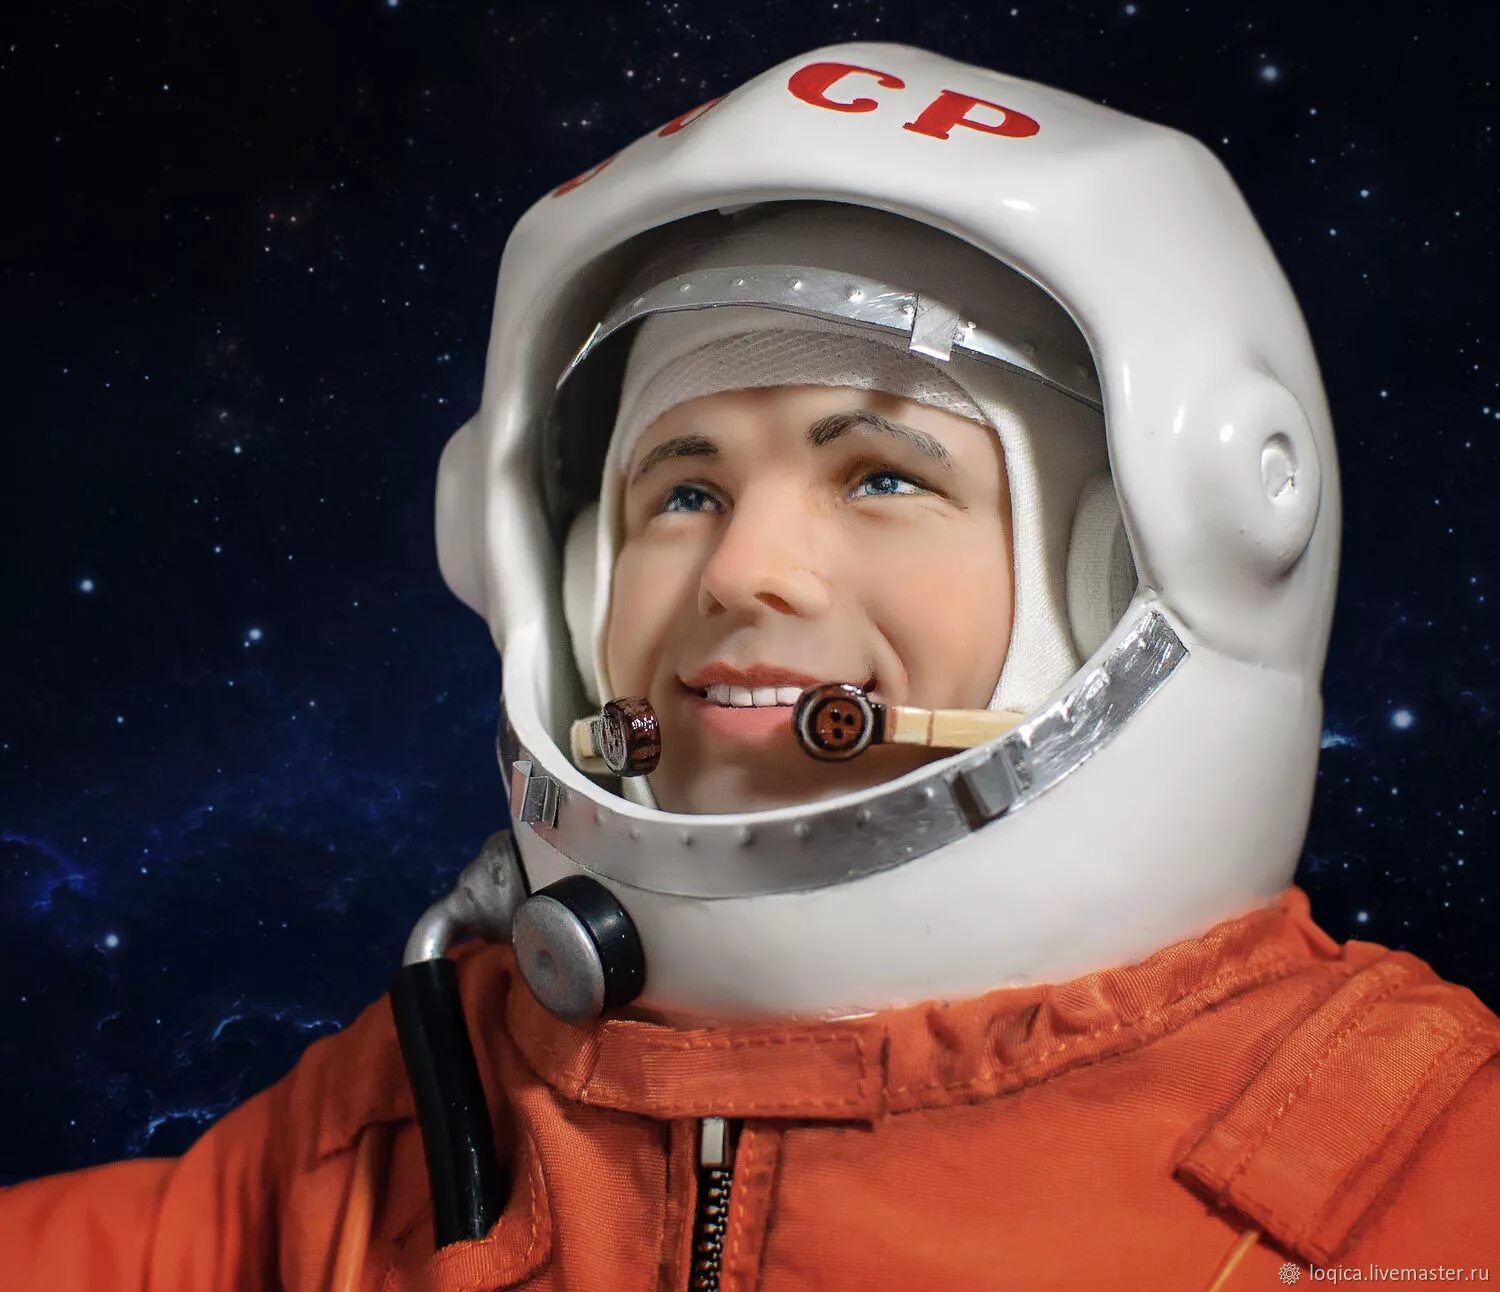 Фото юрия гагарина в скафандре. Гагарин космонавт. Улыбка Юрия Гагарина в скафандре.